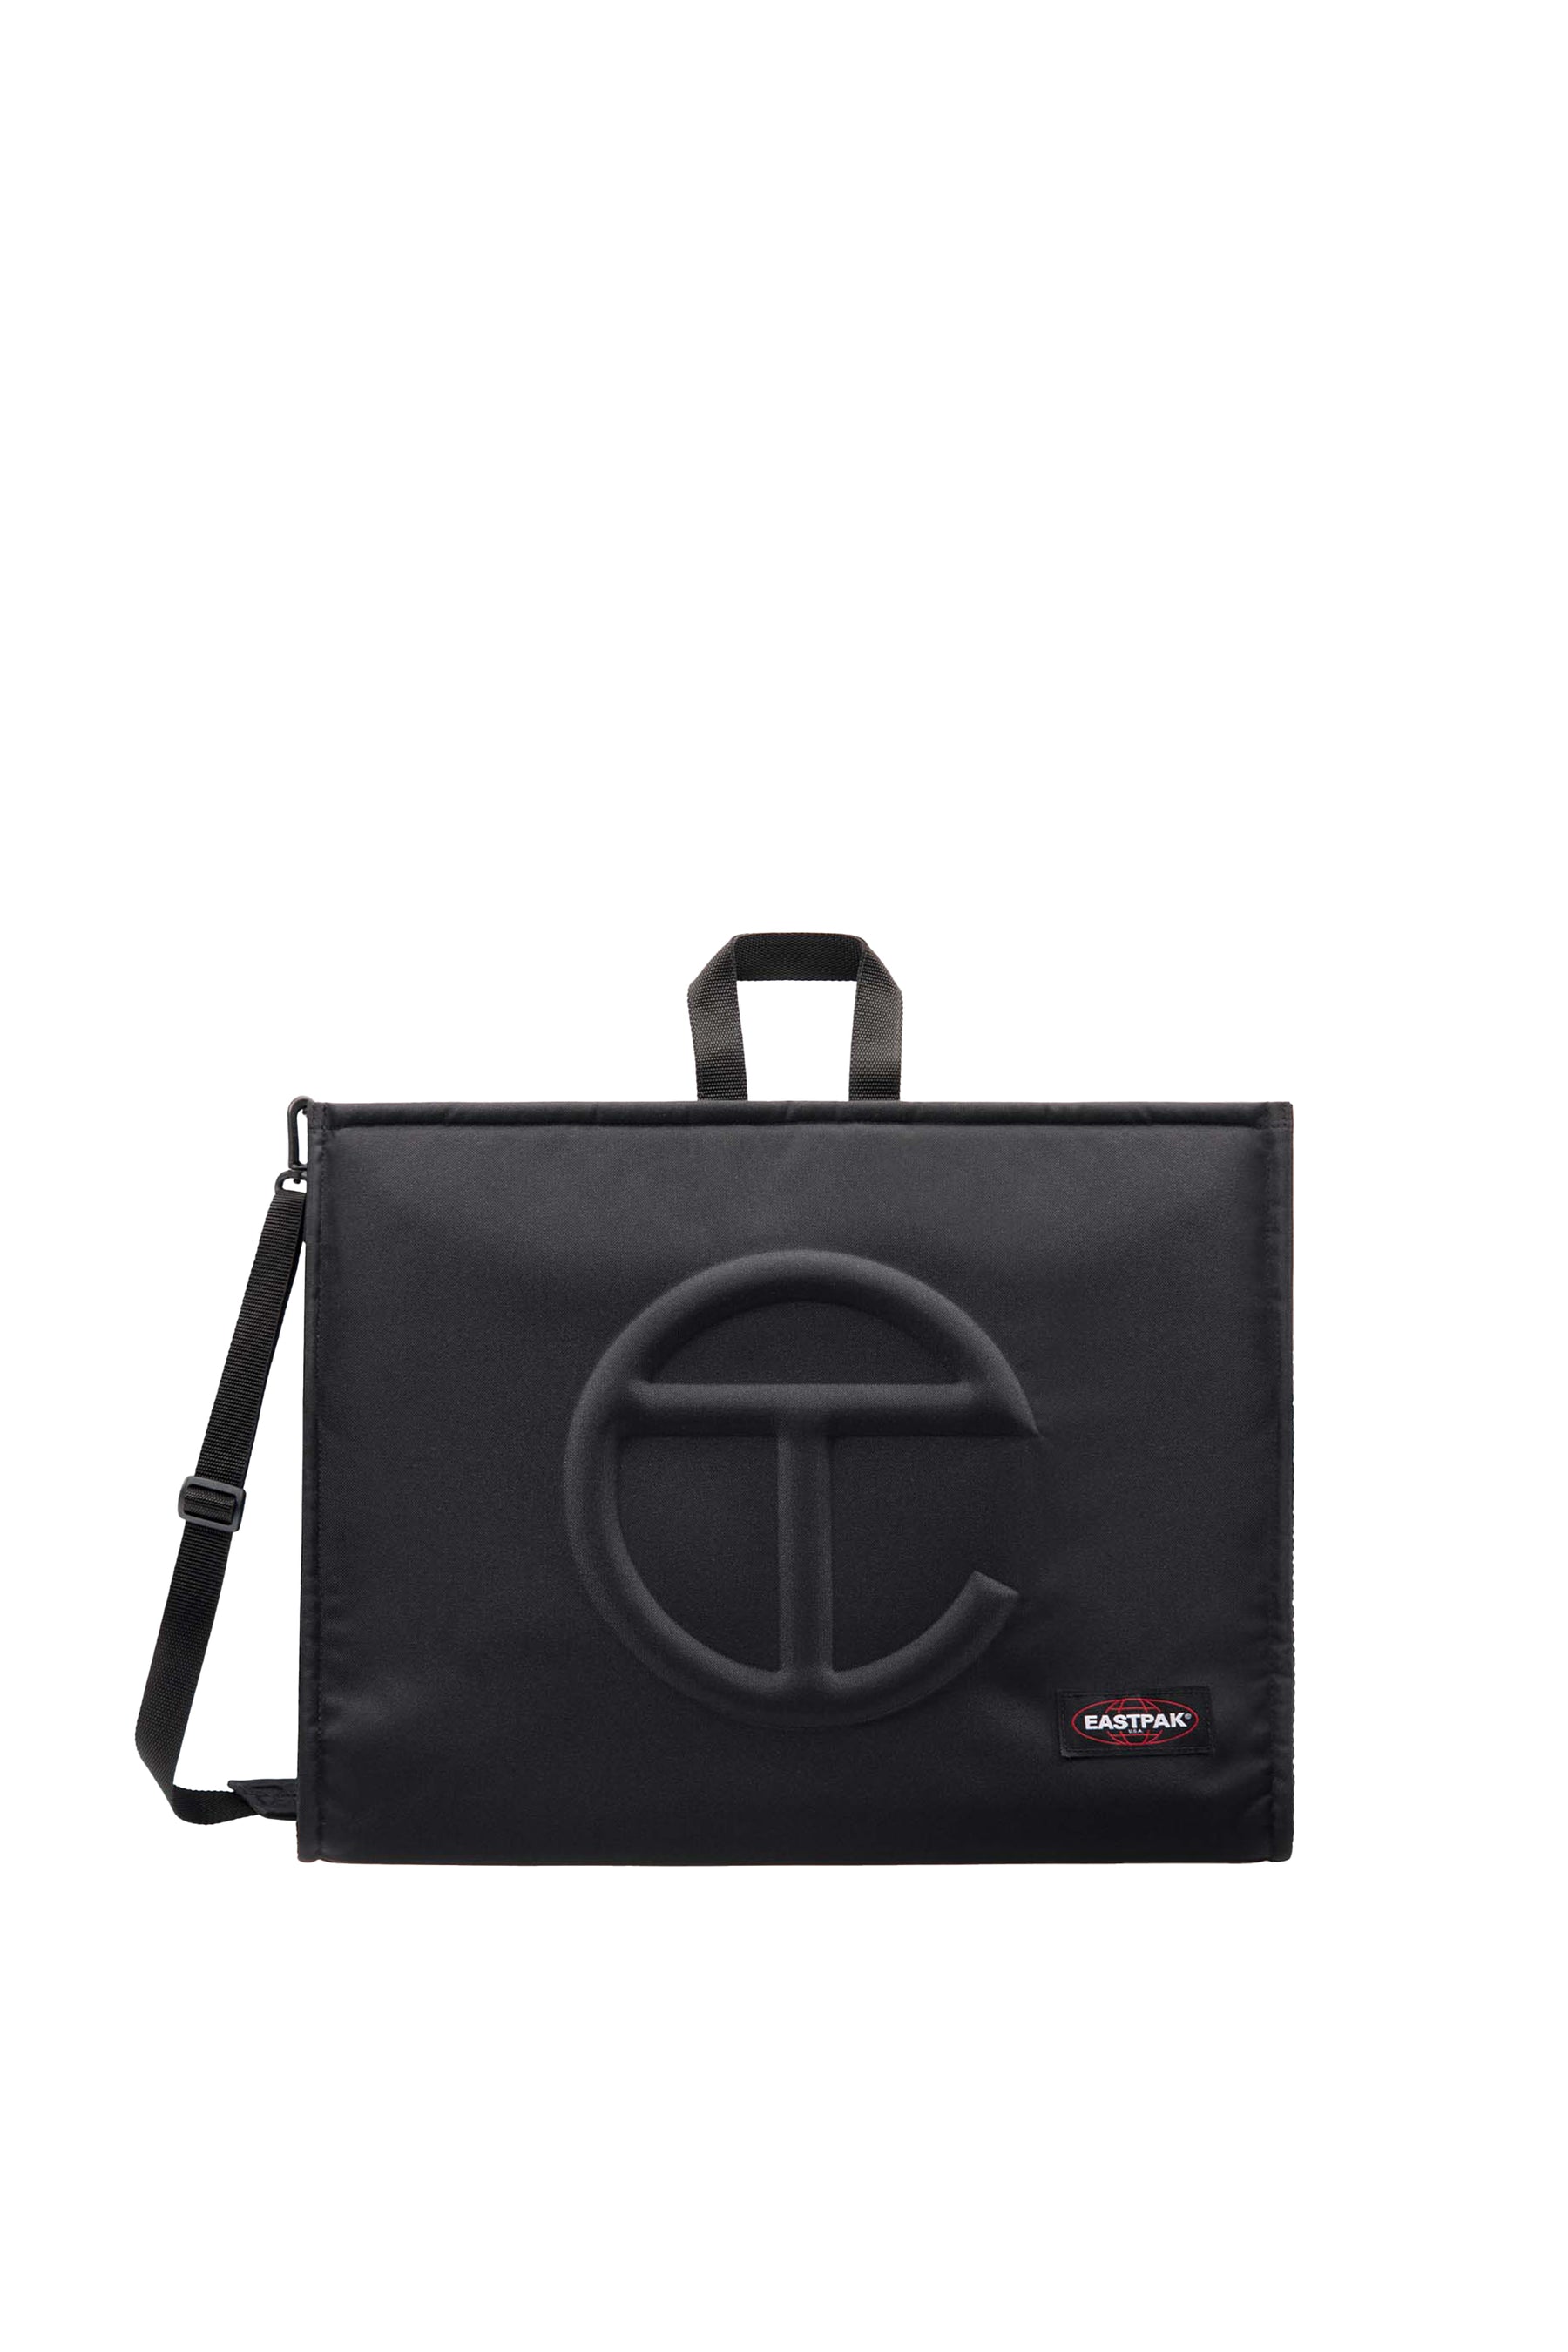 eastpak×Telfar shopping bag small black